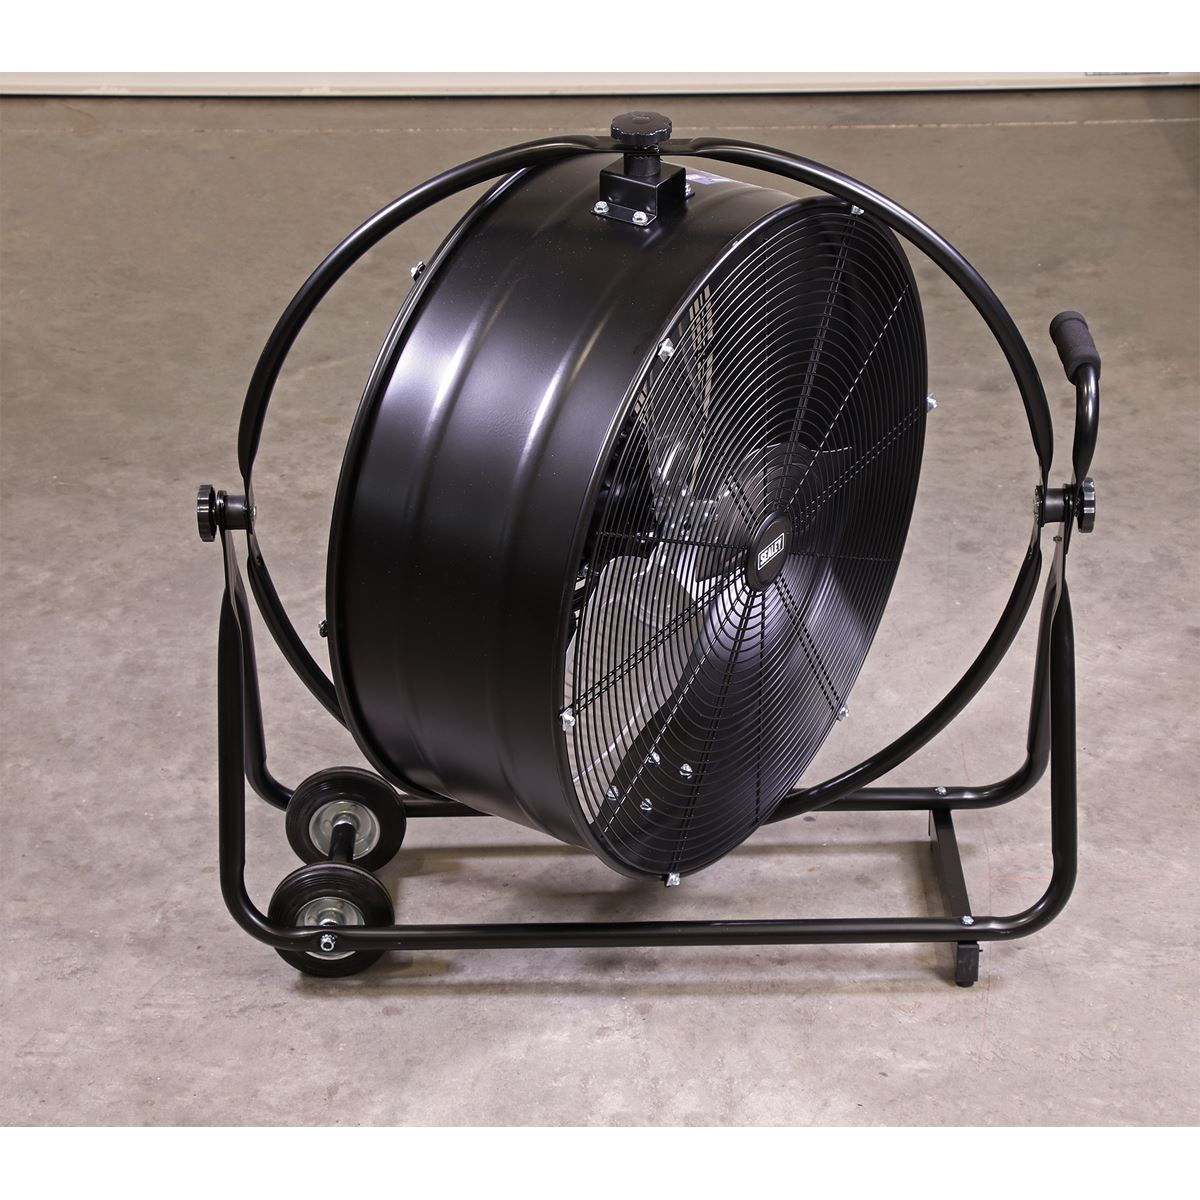 Sealey Industrial High Velocity Orbital Drum Fan 24" 230V